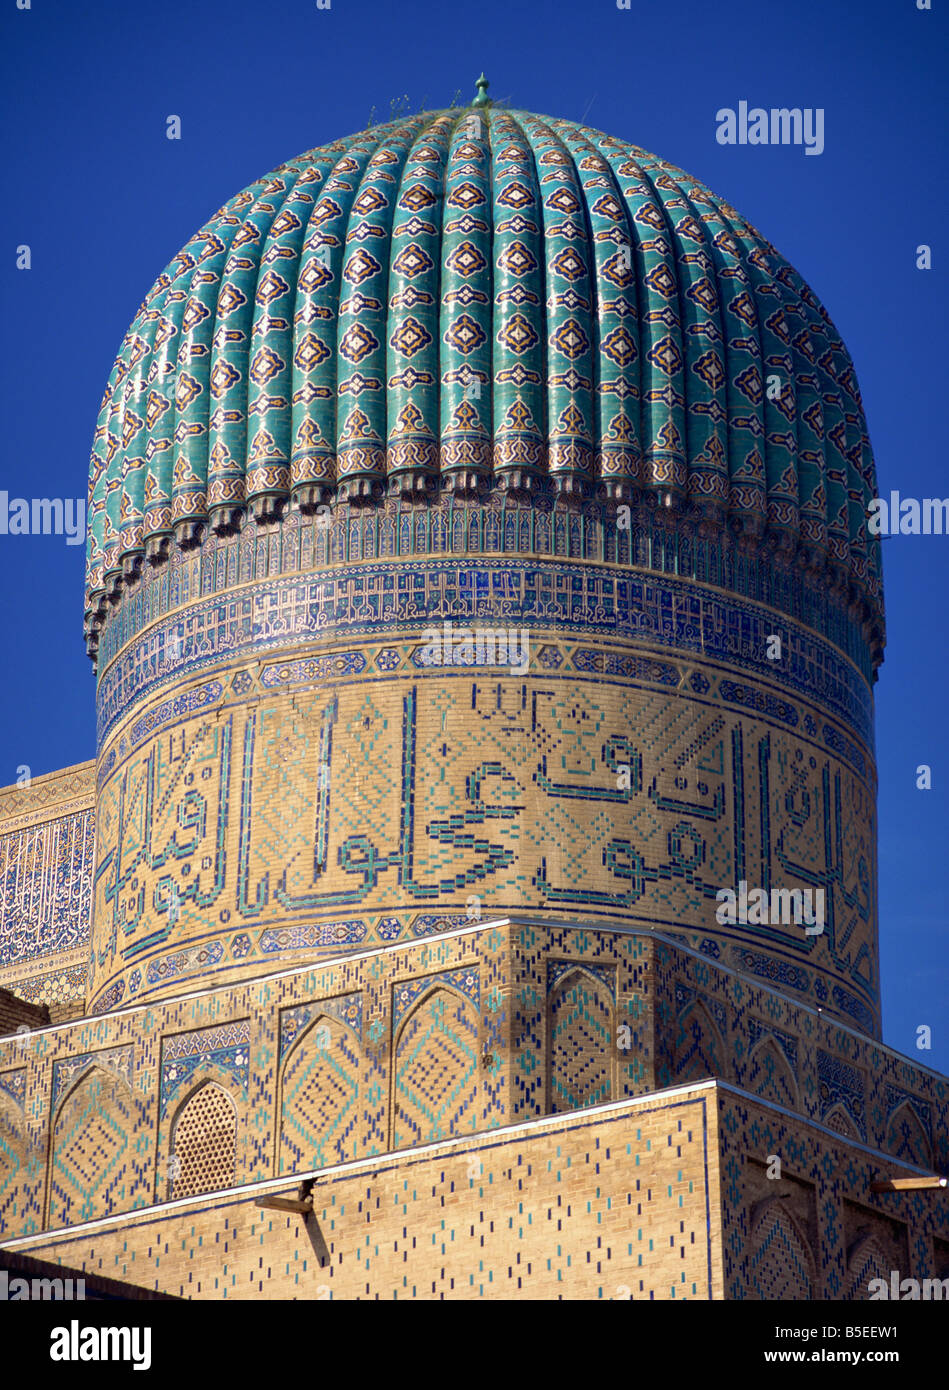 Le dôme nervuré, carreaux et écriture arabe sur la Mosquée de Bibi Khanym Samarkand (Ouzbékistan), l'Asie centrale Banque D'Images